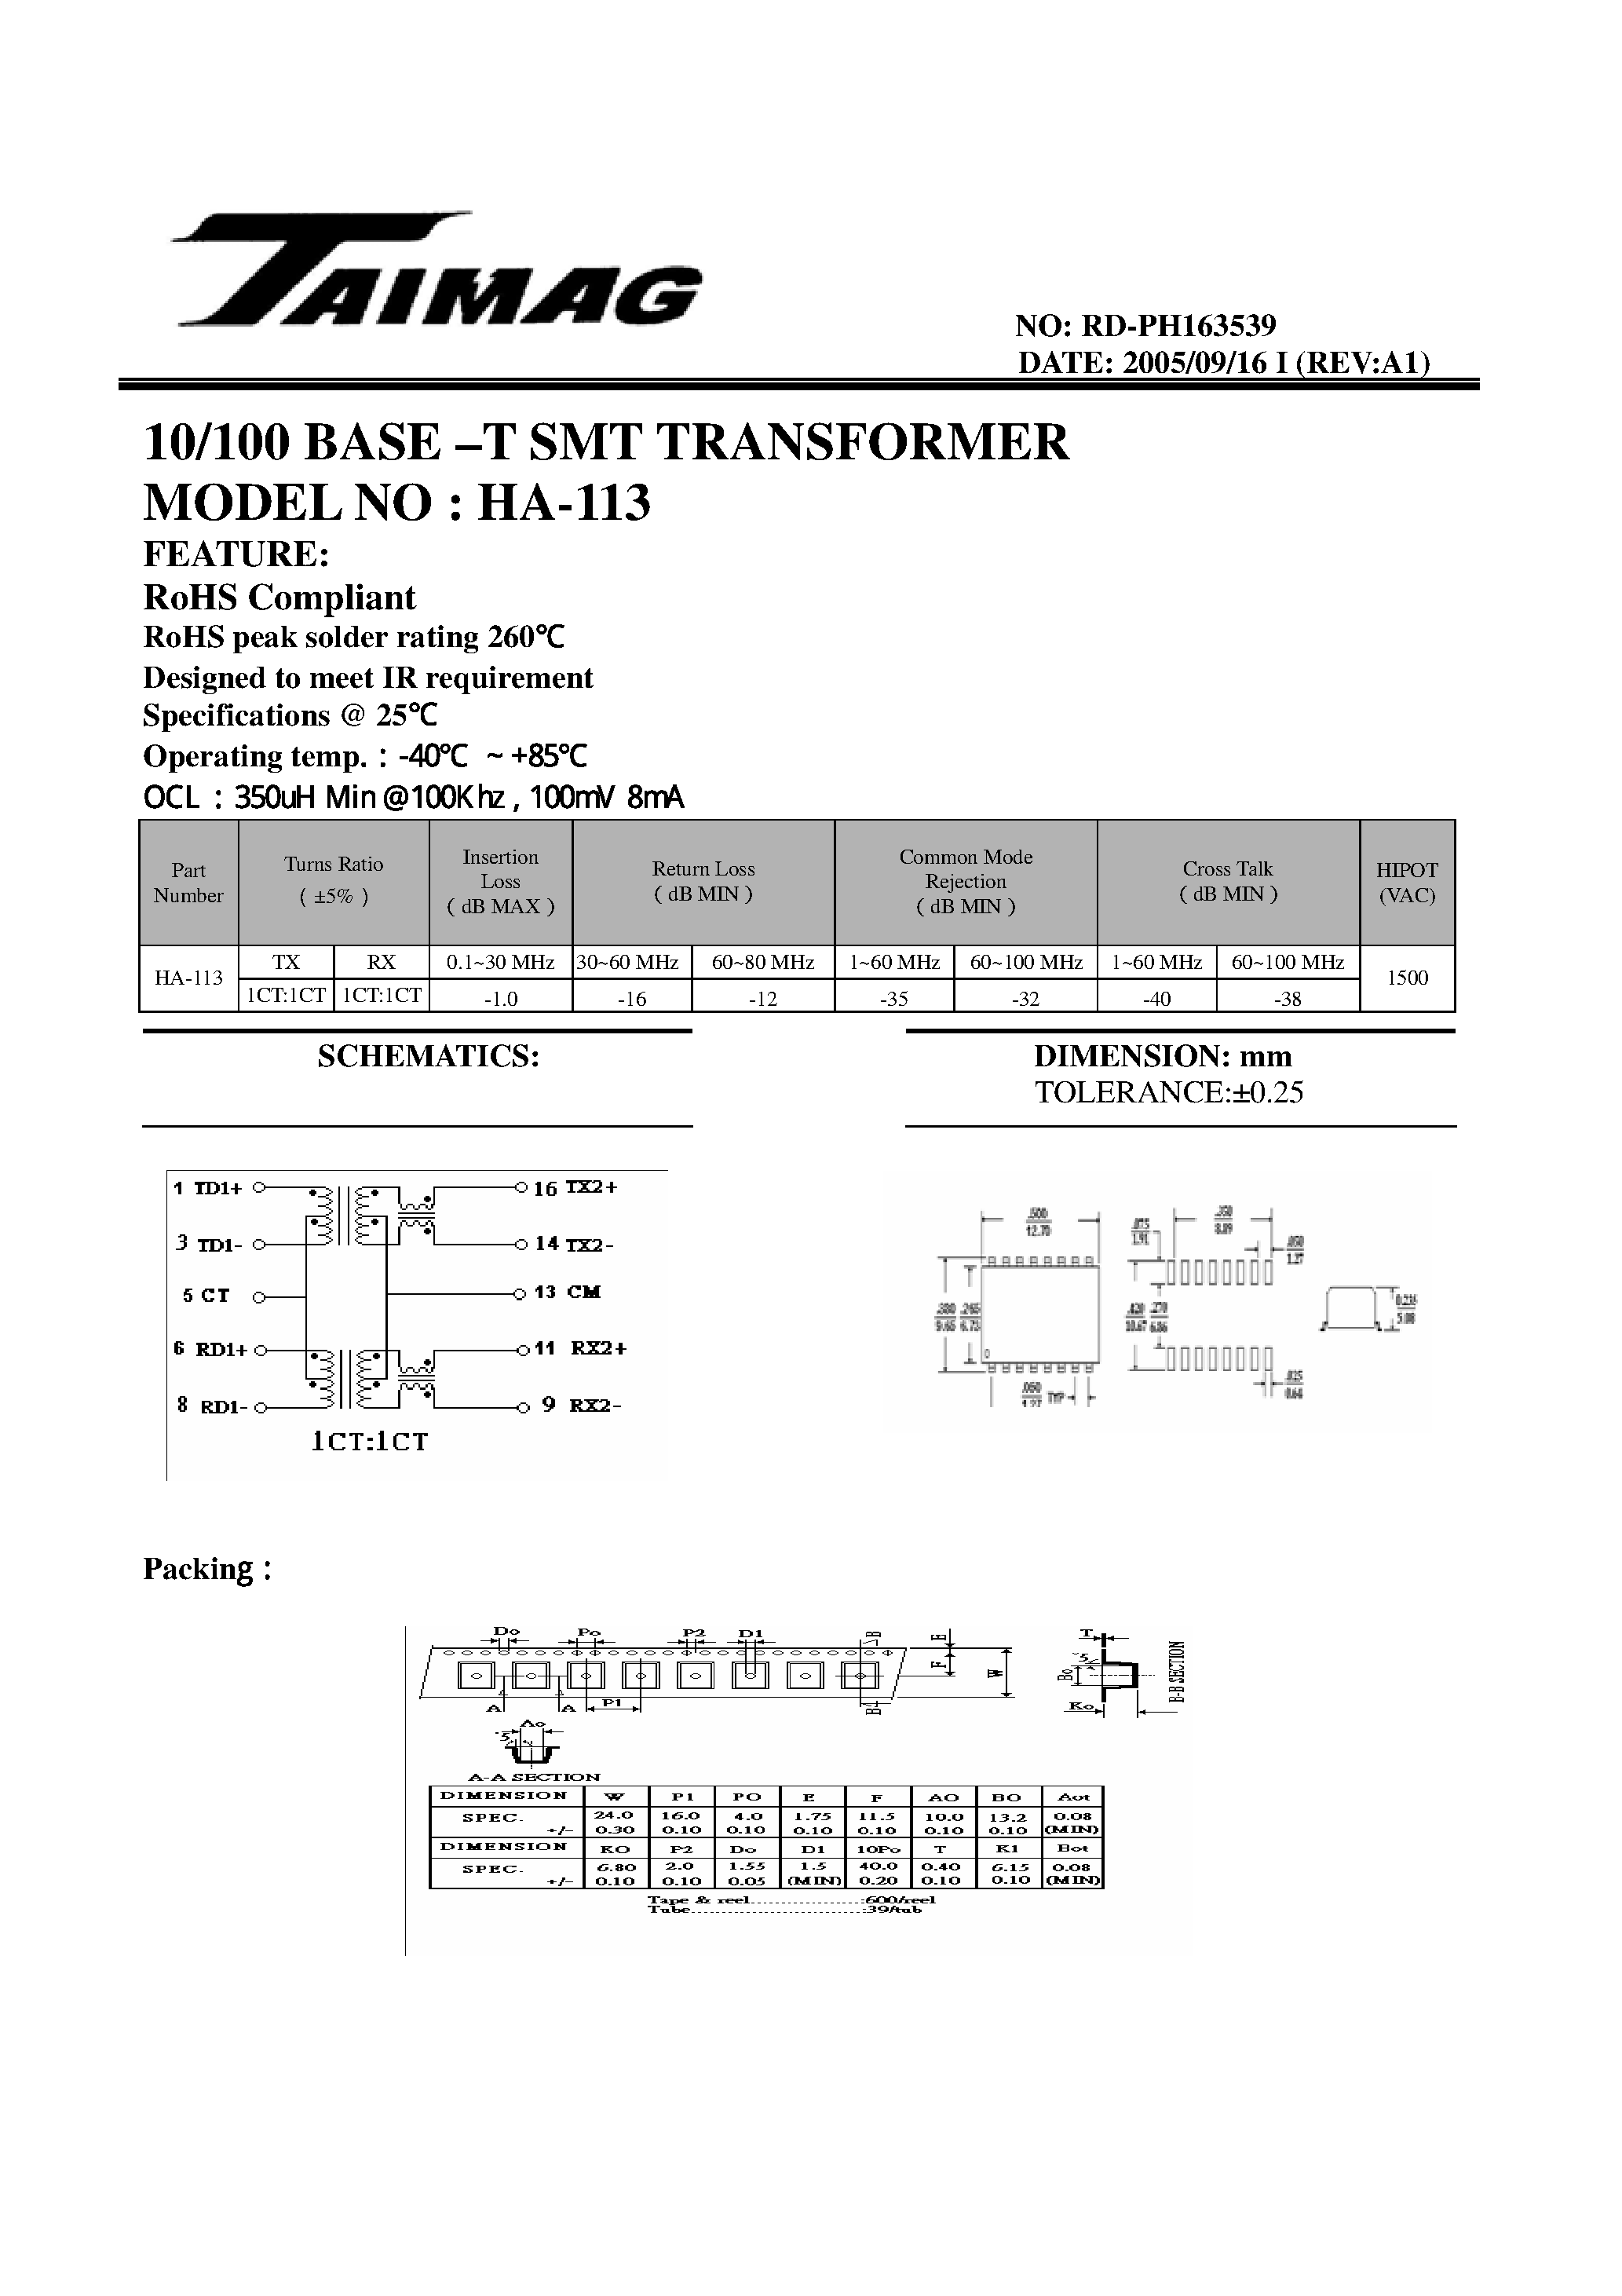 Datasheet PH163539 - 10/100 BASE-T SMT TRANSFORMER page 1